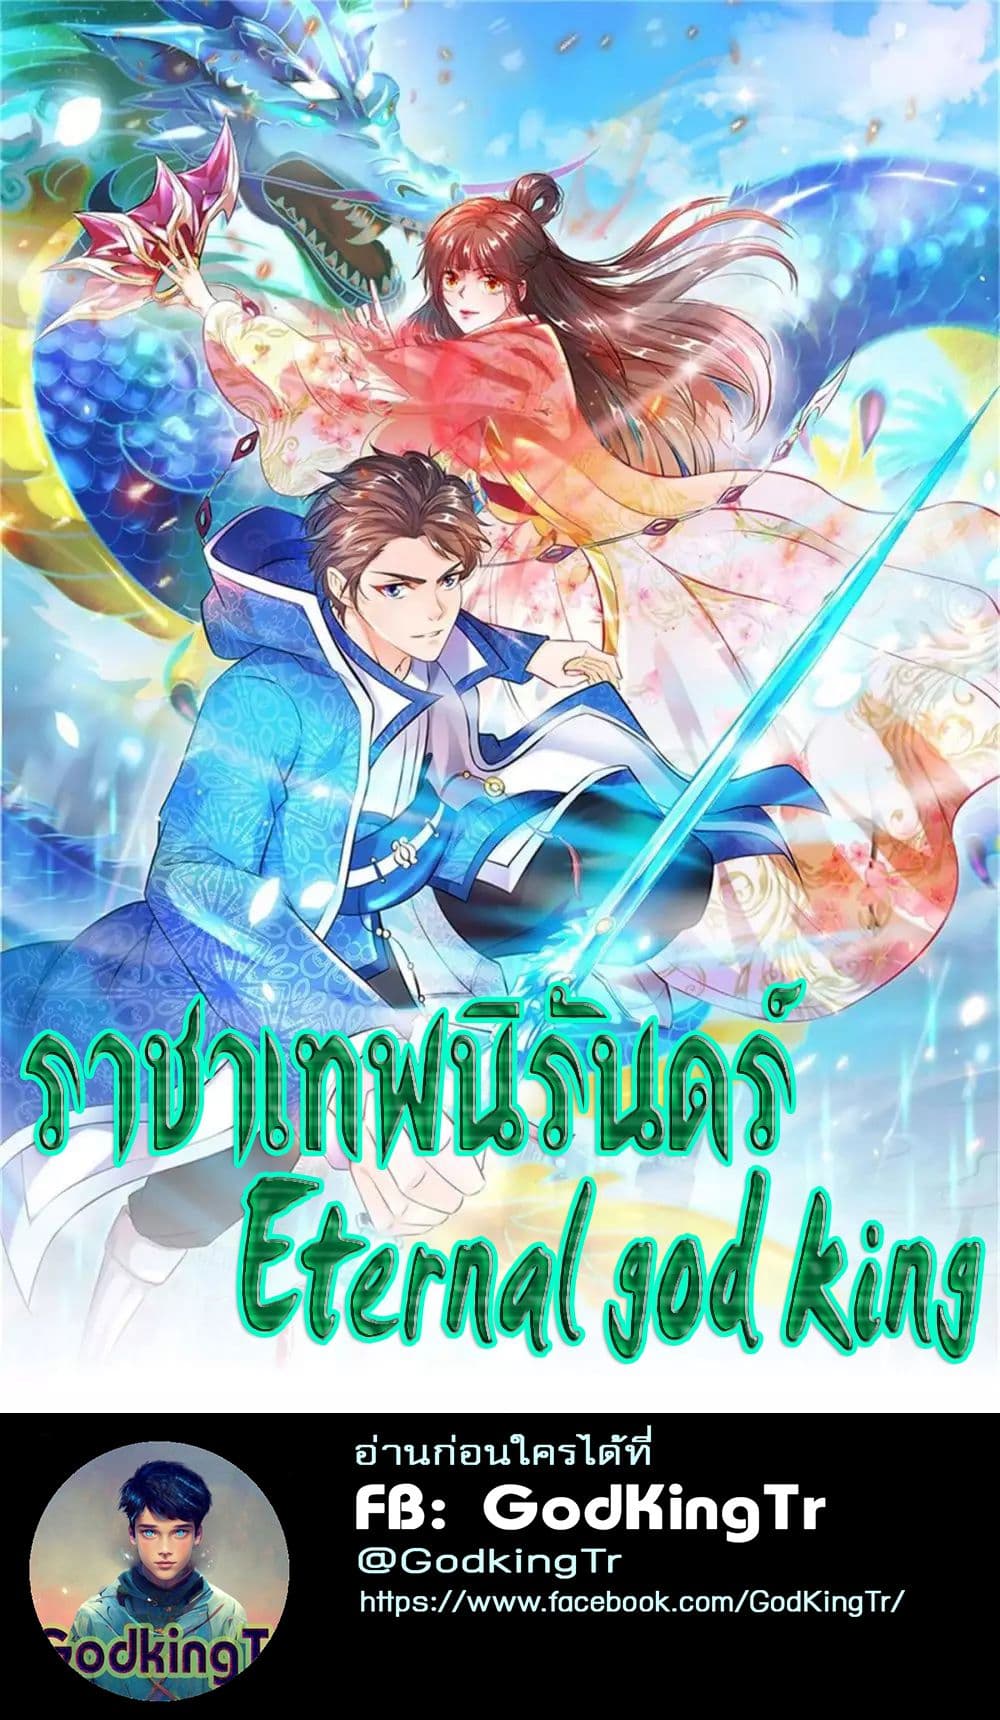 Eternal god King 27 01